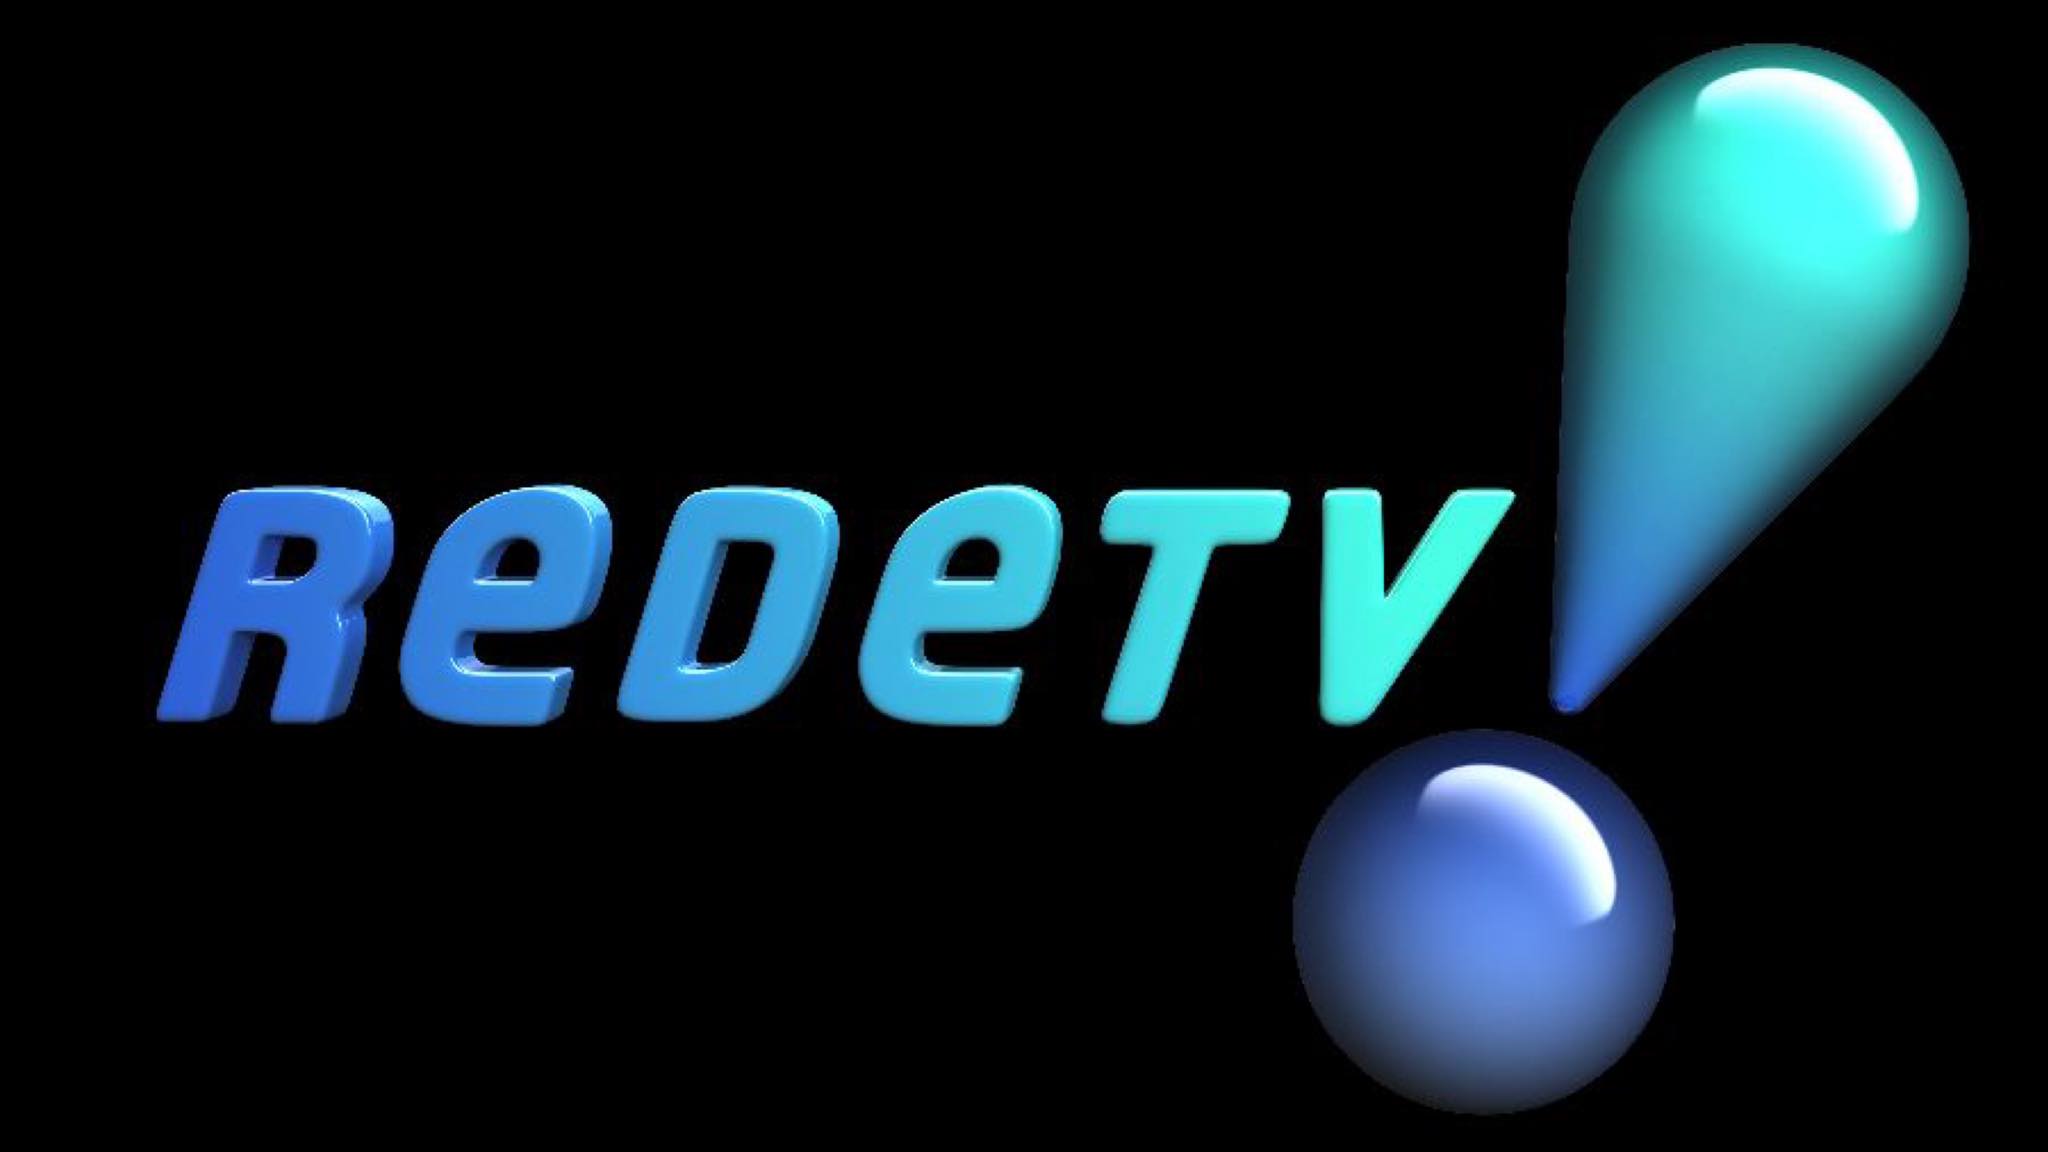 RedeTV! Foi inaugurada em 1999 em São Paulo. Fonte: Reprodução